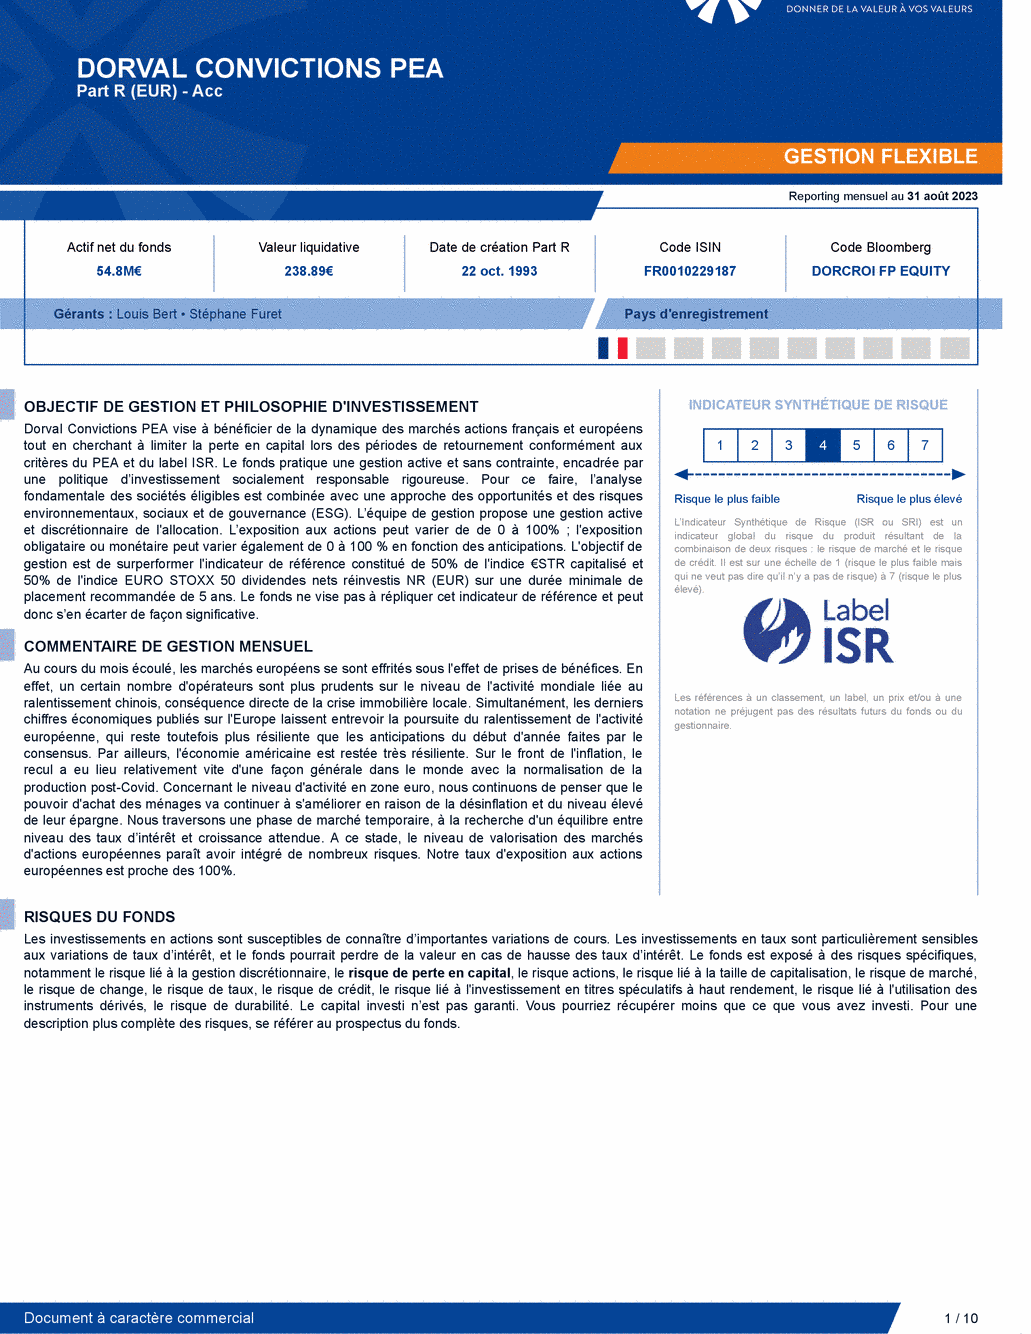 Reporting DORVAL CONVICTIONS PEA - 31/08/2023 - Français